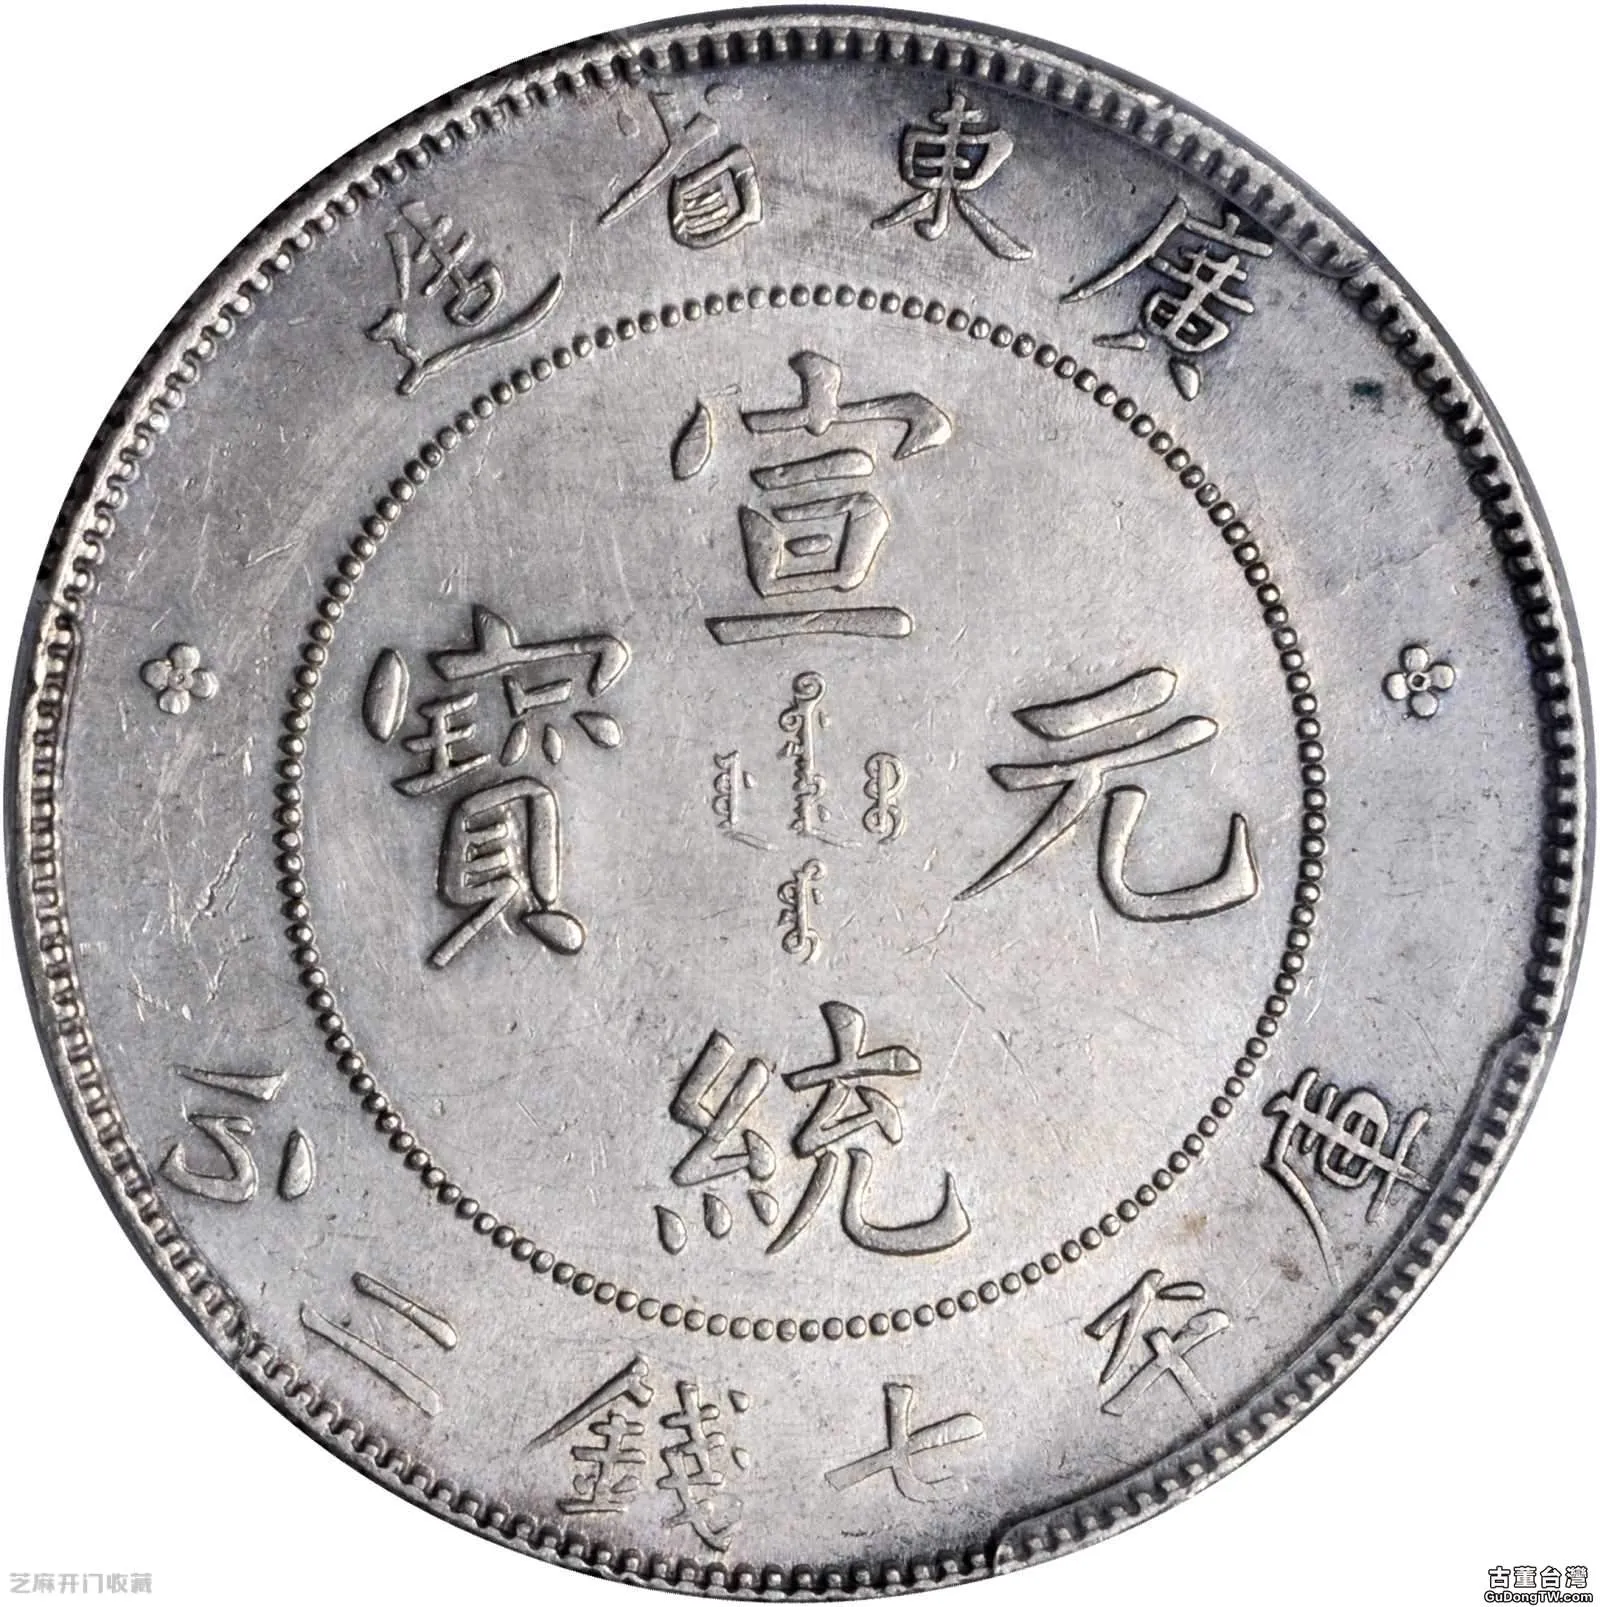 廣東省造宣統元寶銀元是否有收藏價值 價格是多少